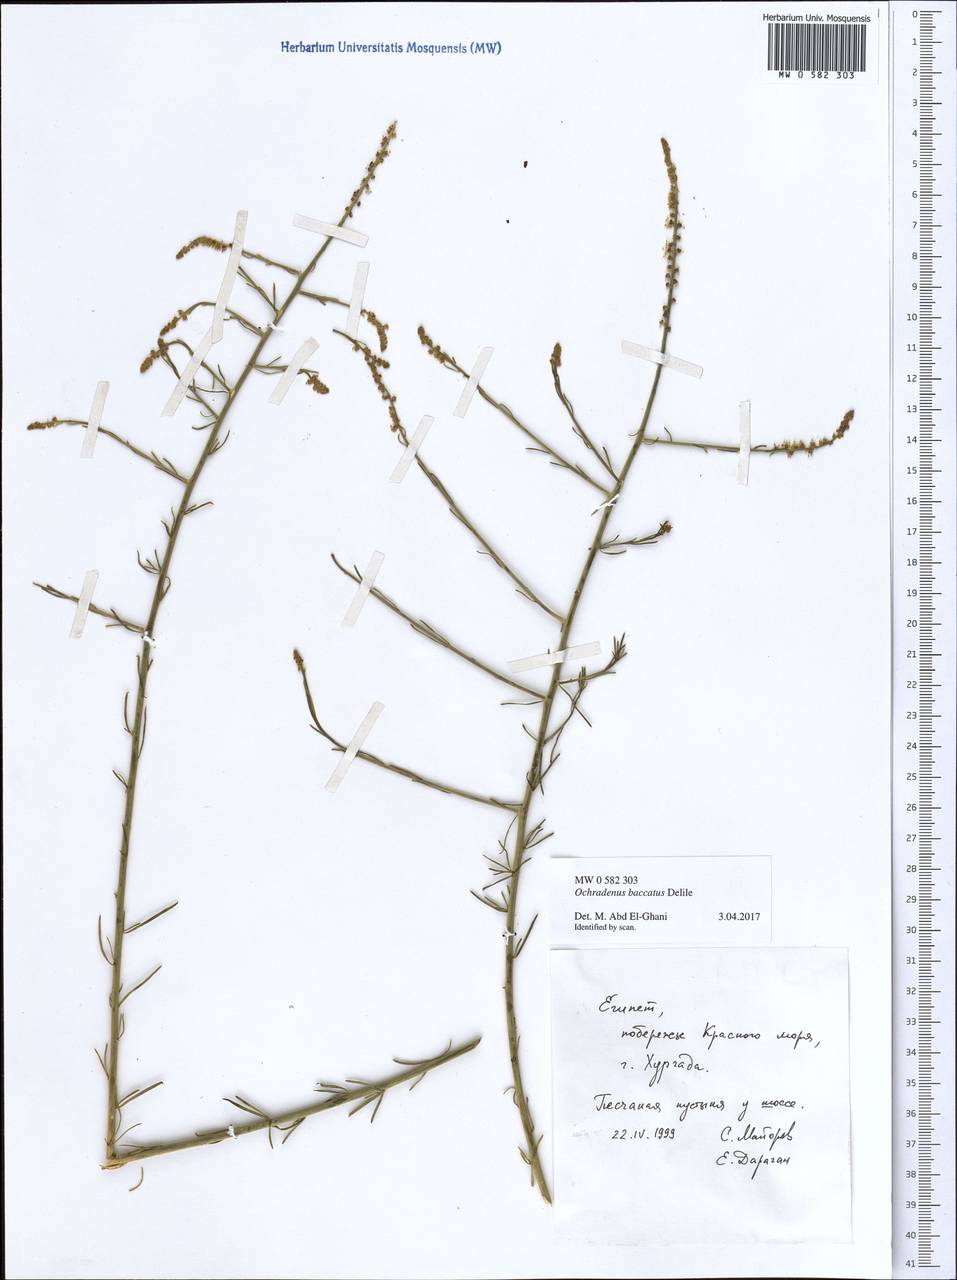 Ochradenus baccatus Del., Africa (AFR) (Egypt)